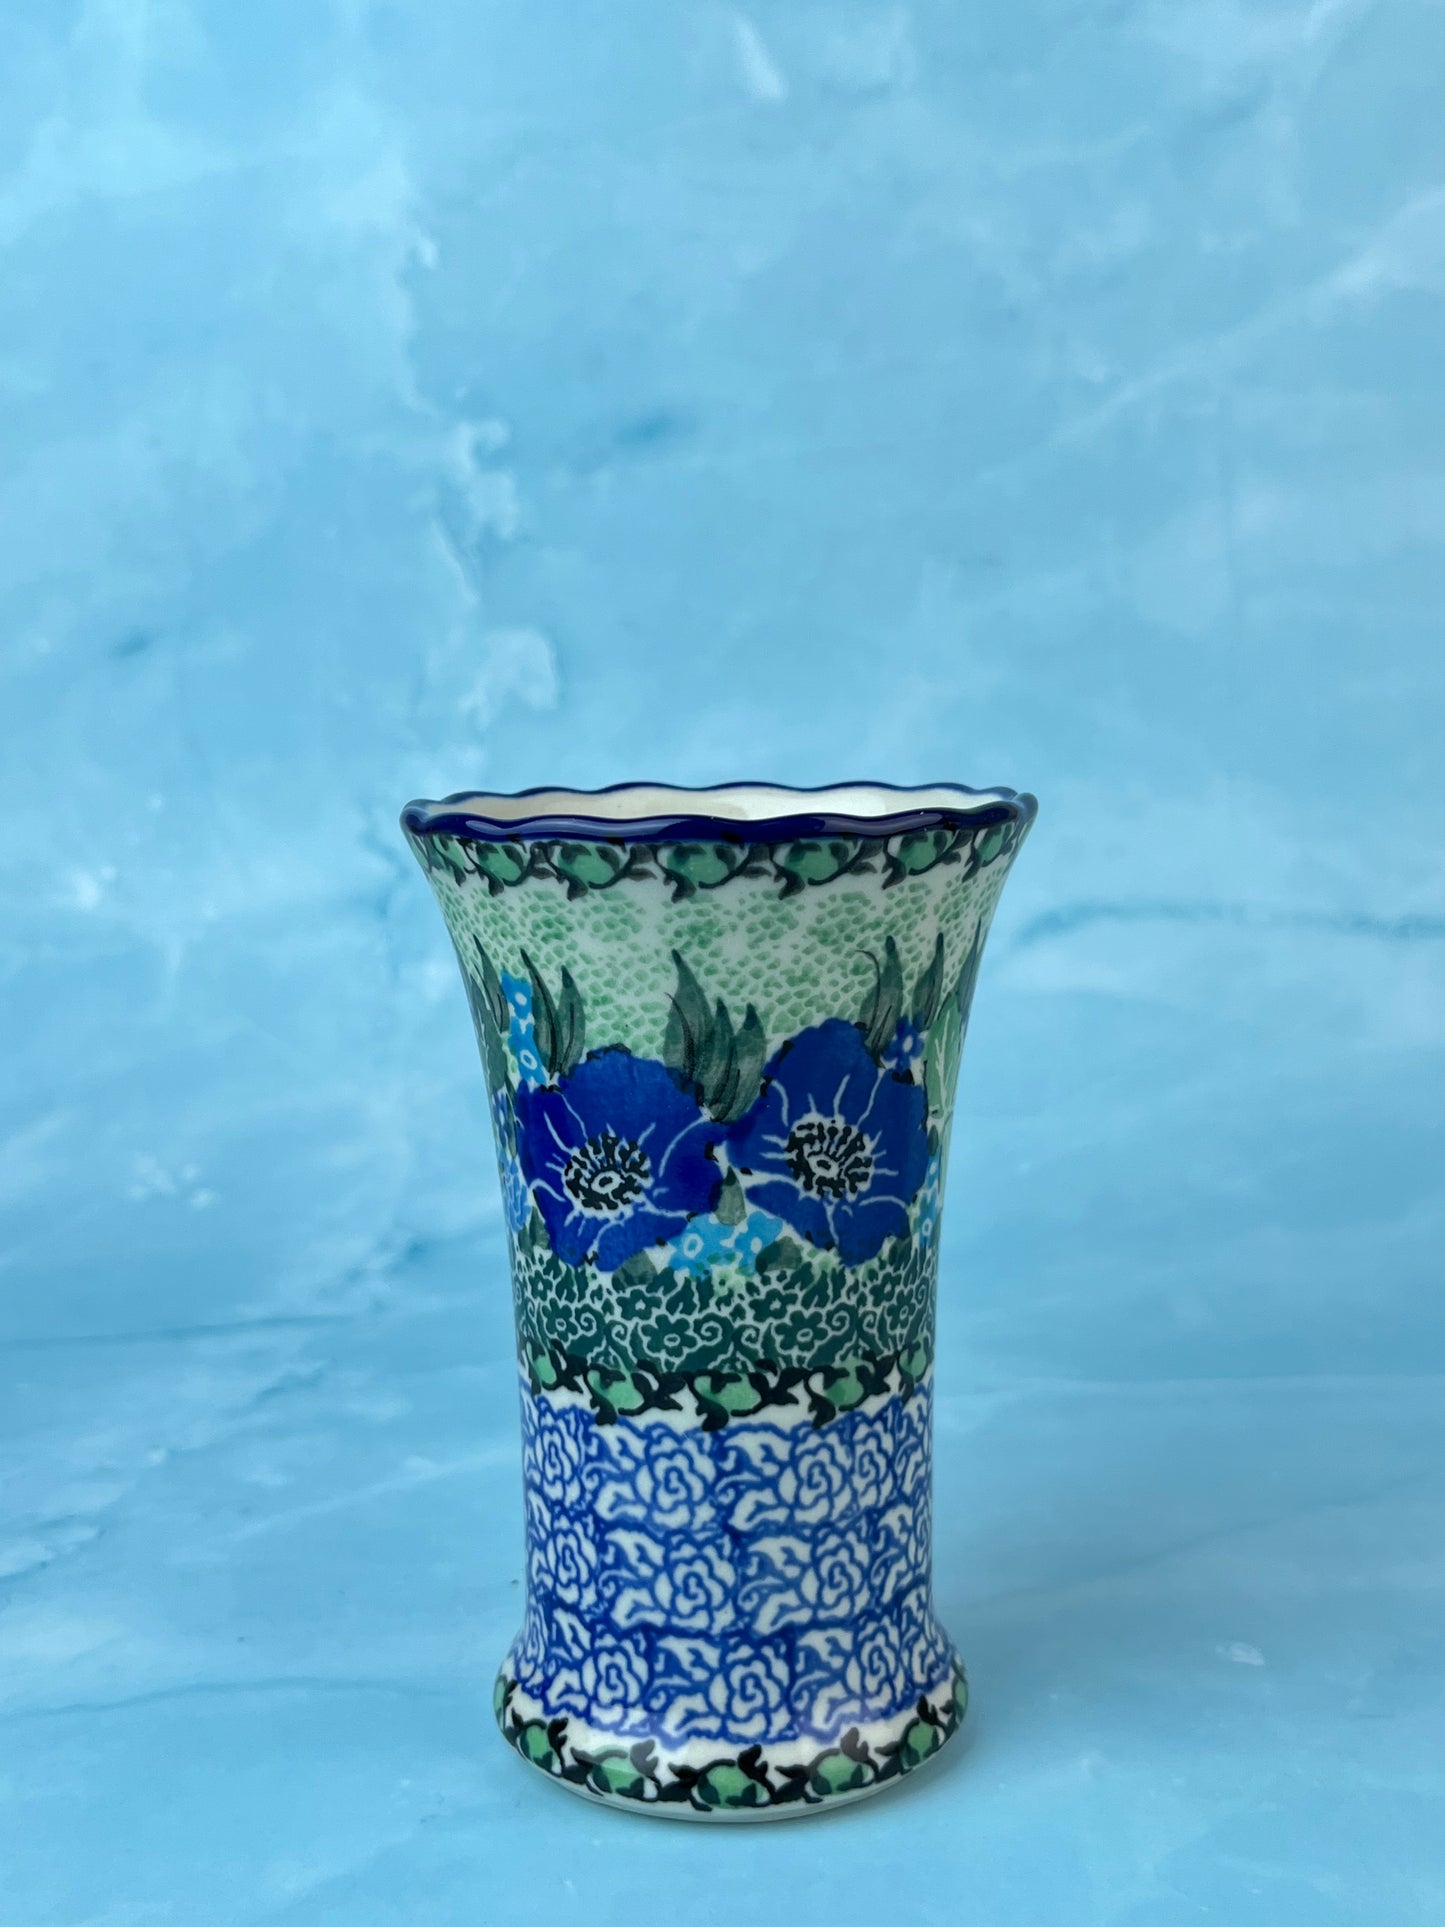 Ruffled Unikat Bud Vase - Shape 127 - Pattern U4629